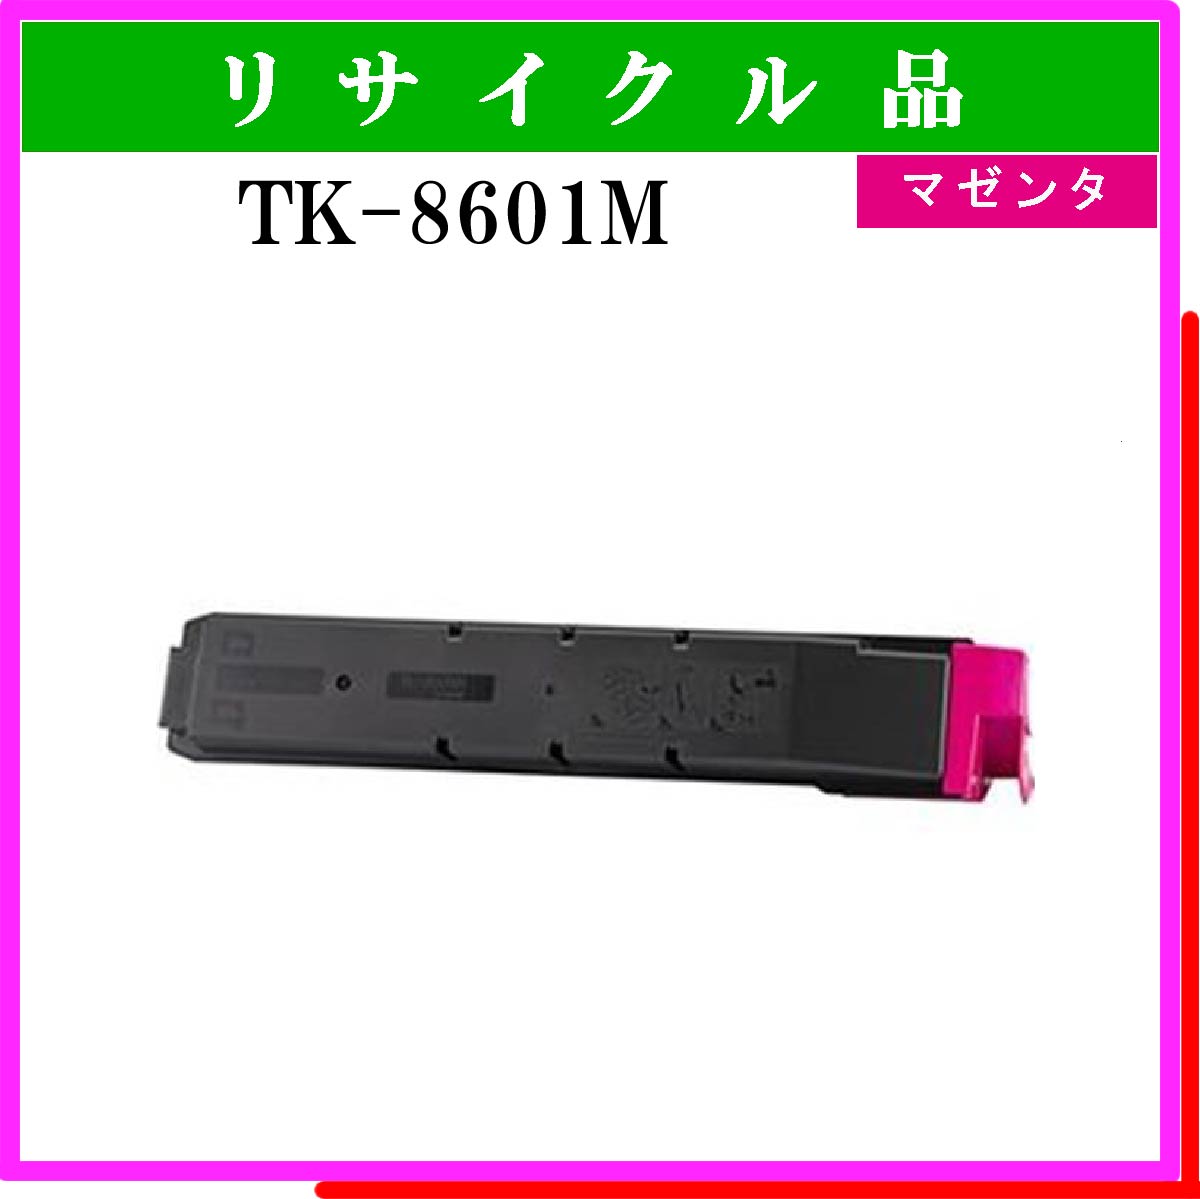 TK-8601M